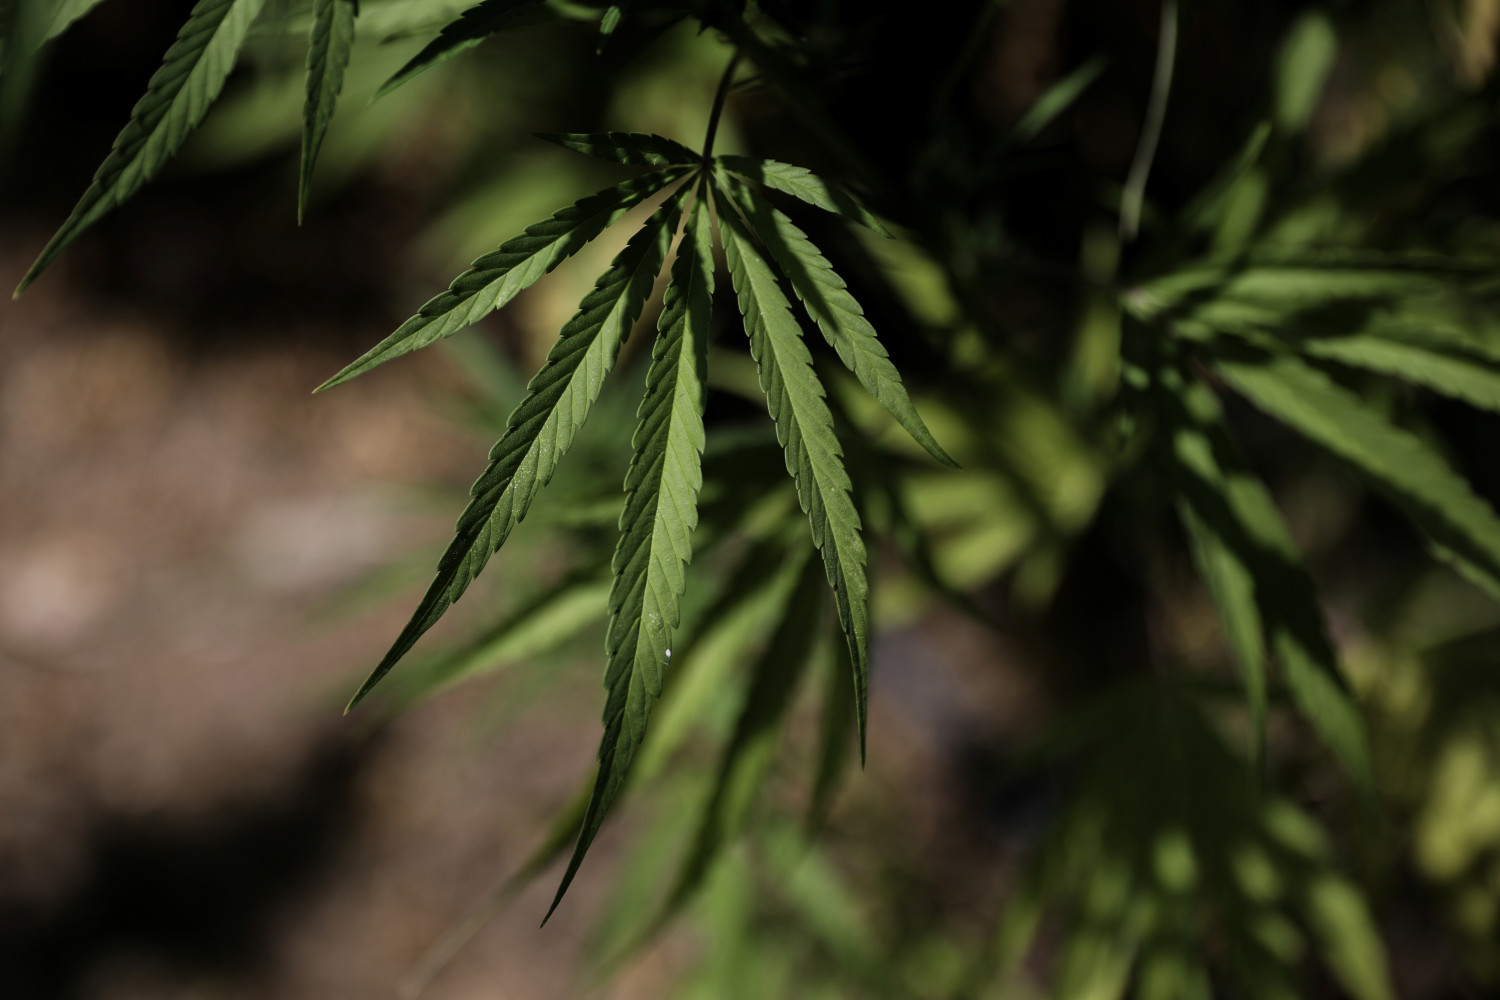 SynBiotic sube en bolsa tras el compromiso del Gobierno alemán de legalizar el cannabis